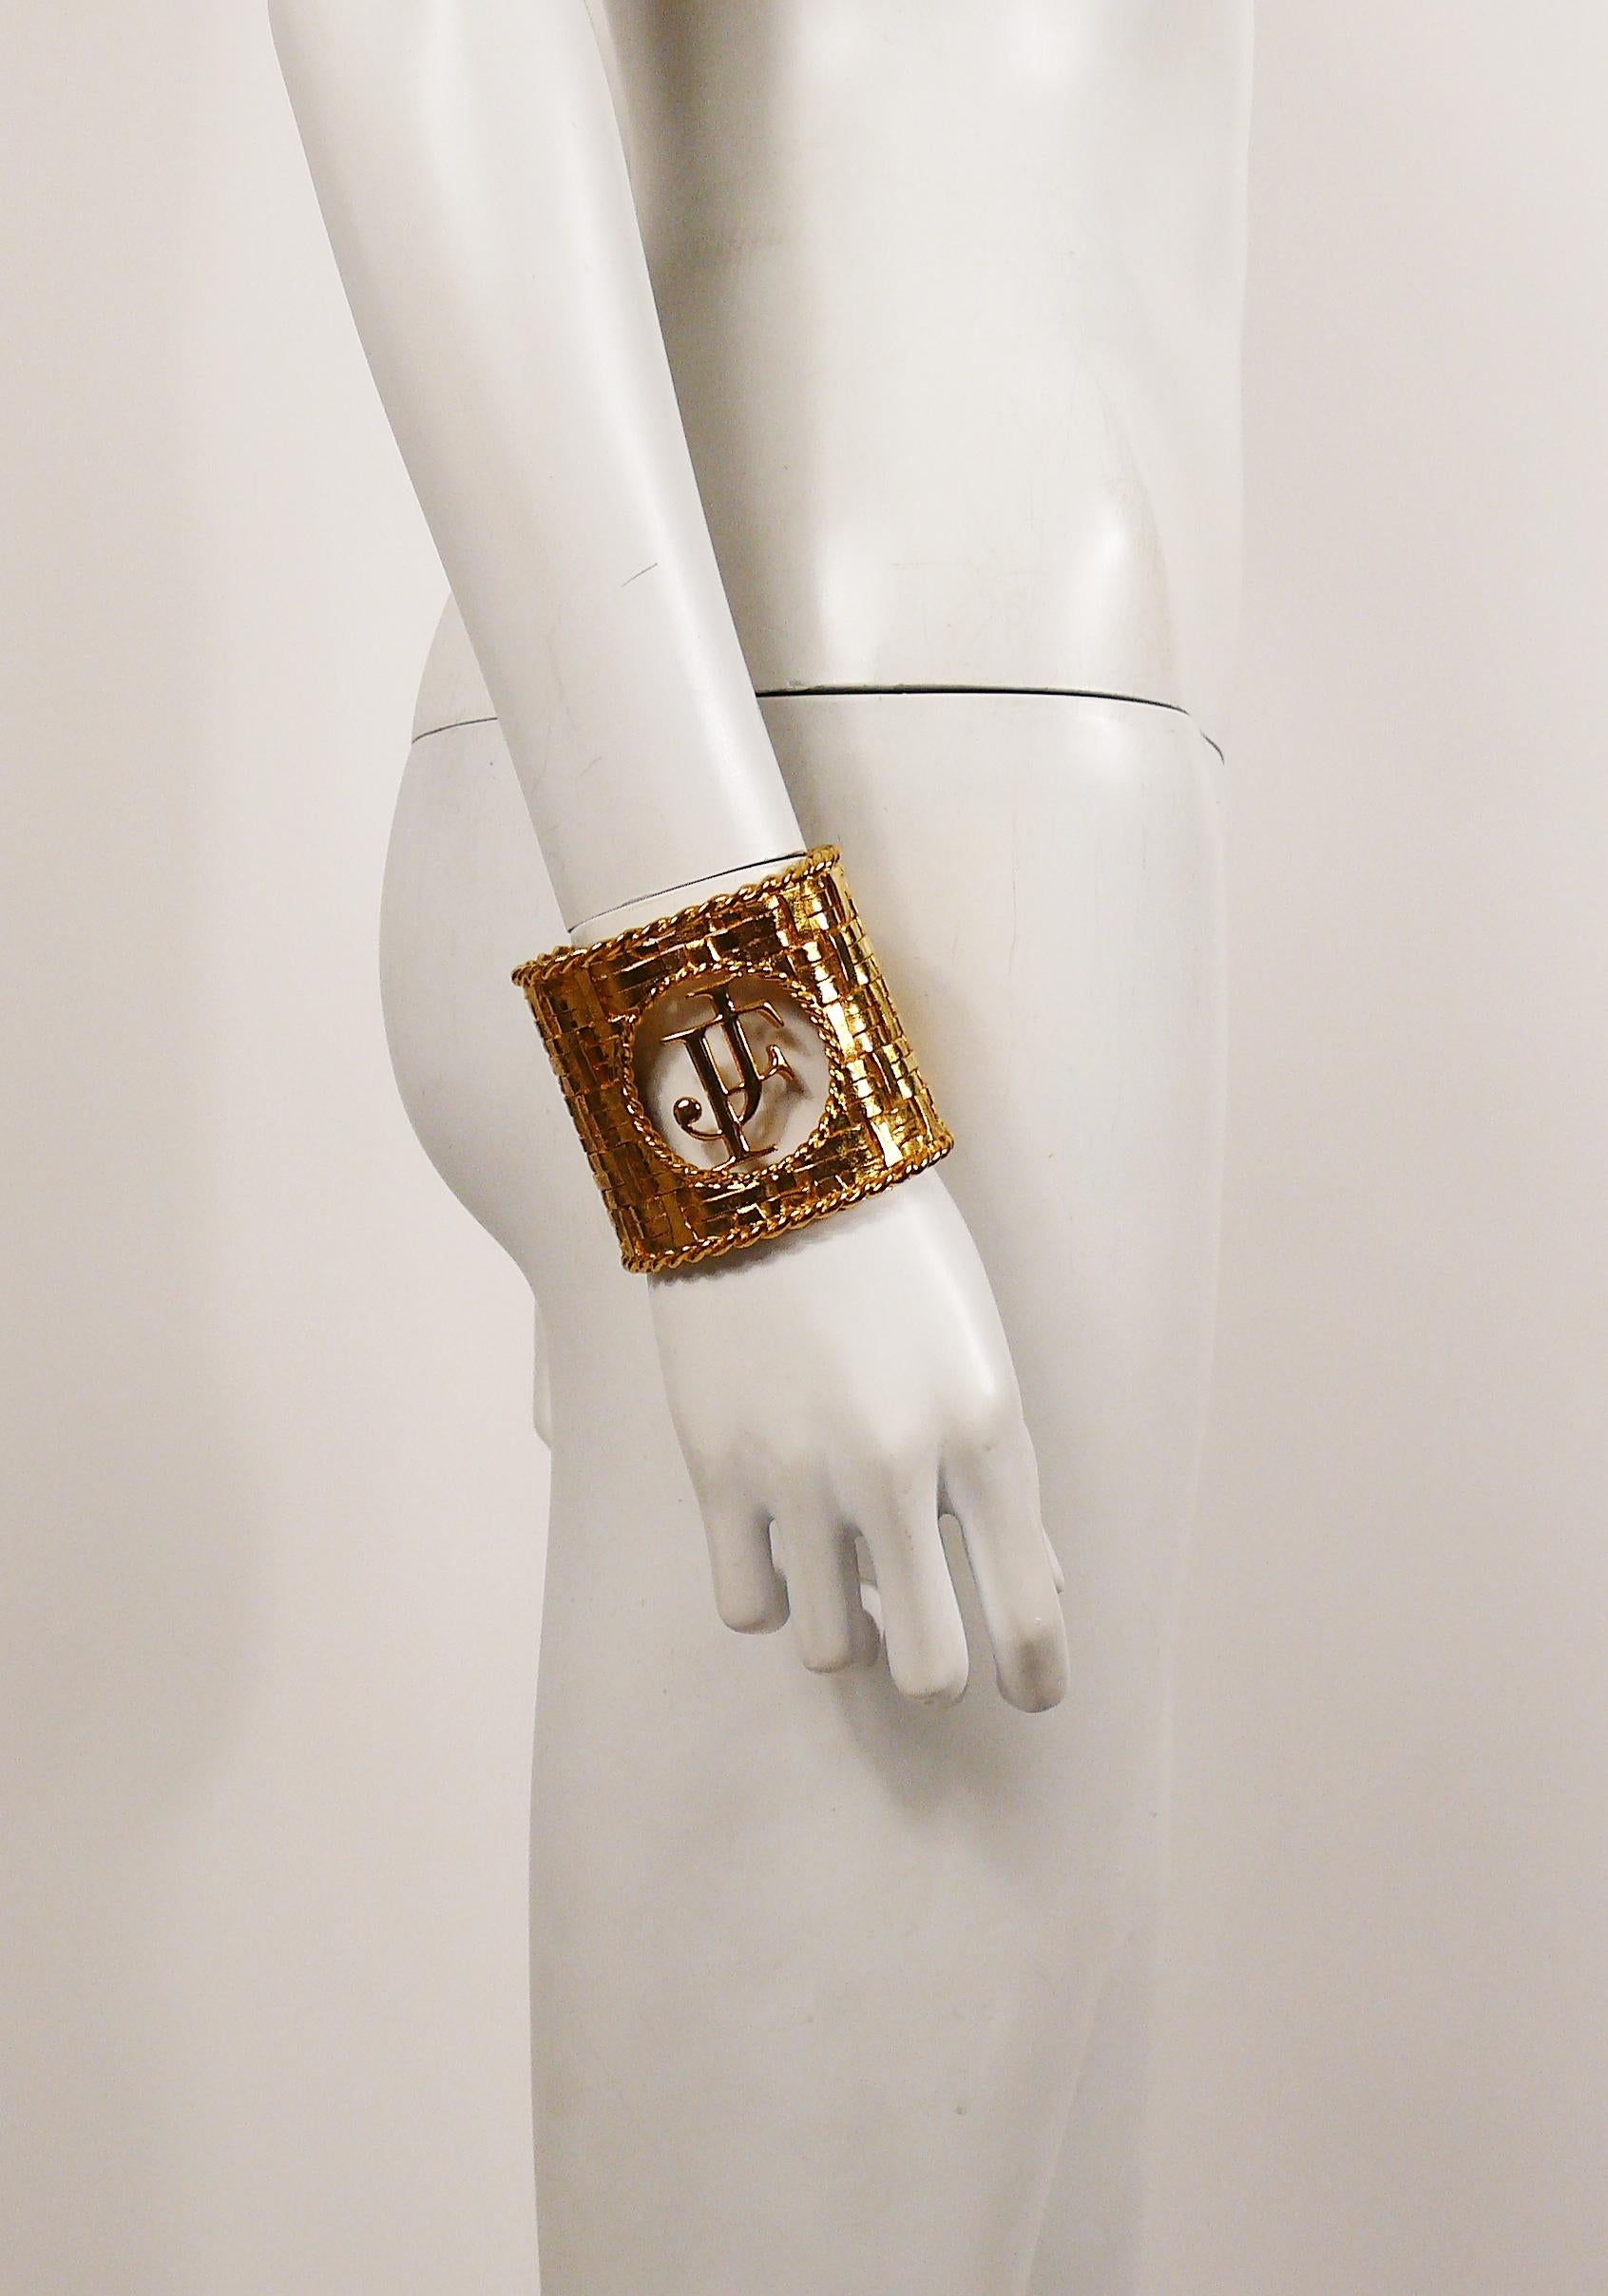 Bracelet manchette vintage couture tissé en or massif avec un grand monogramme JF.

Superbe qualité !

Non marqué.

Mesures indicatives : hauteur environ 6.6 cm (2.60 inches) / circonférence intérieure environ 20.11 cm (7.92 inches) / ouverture du